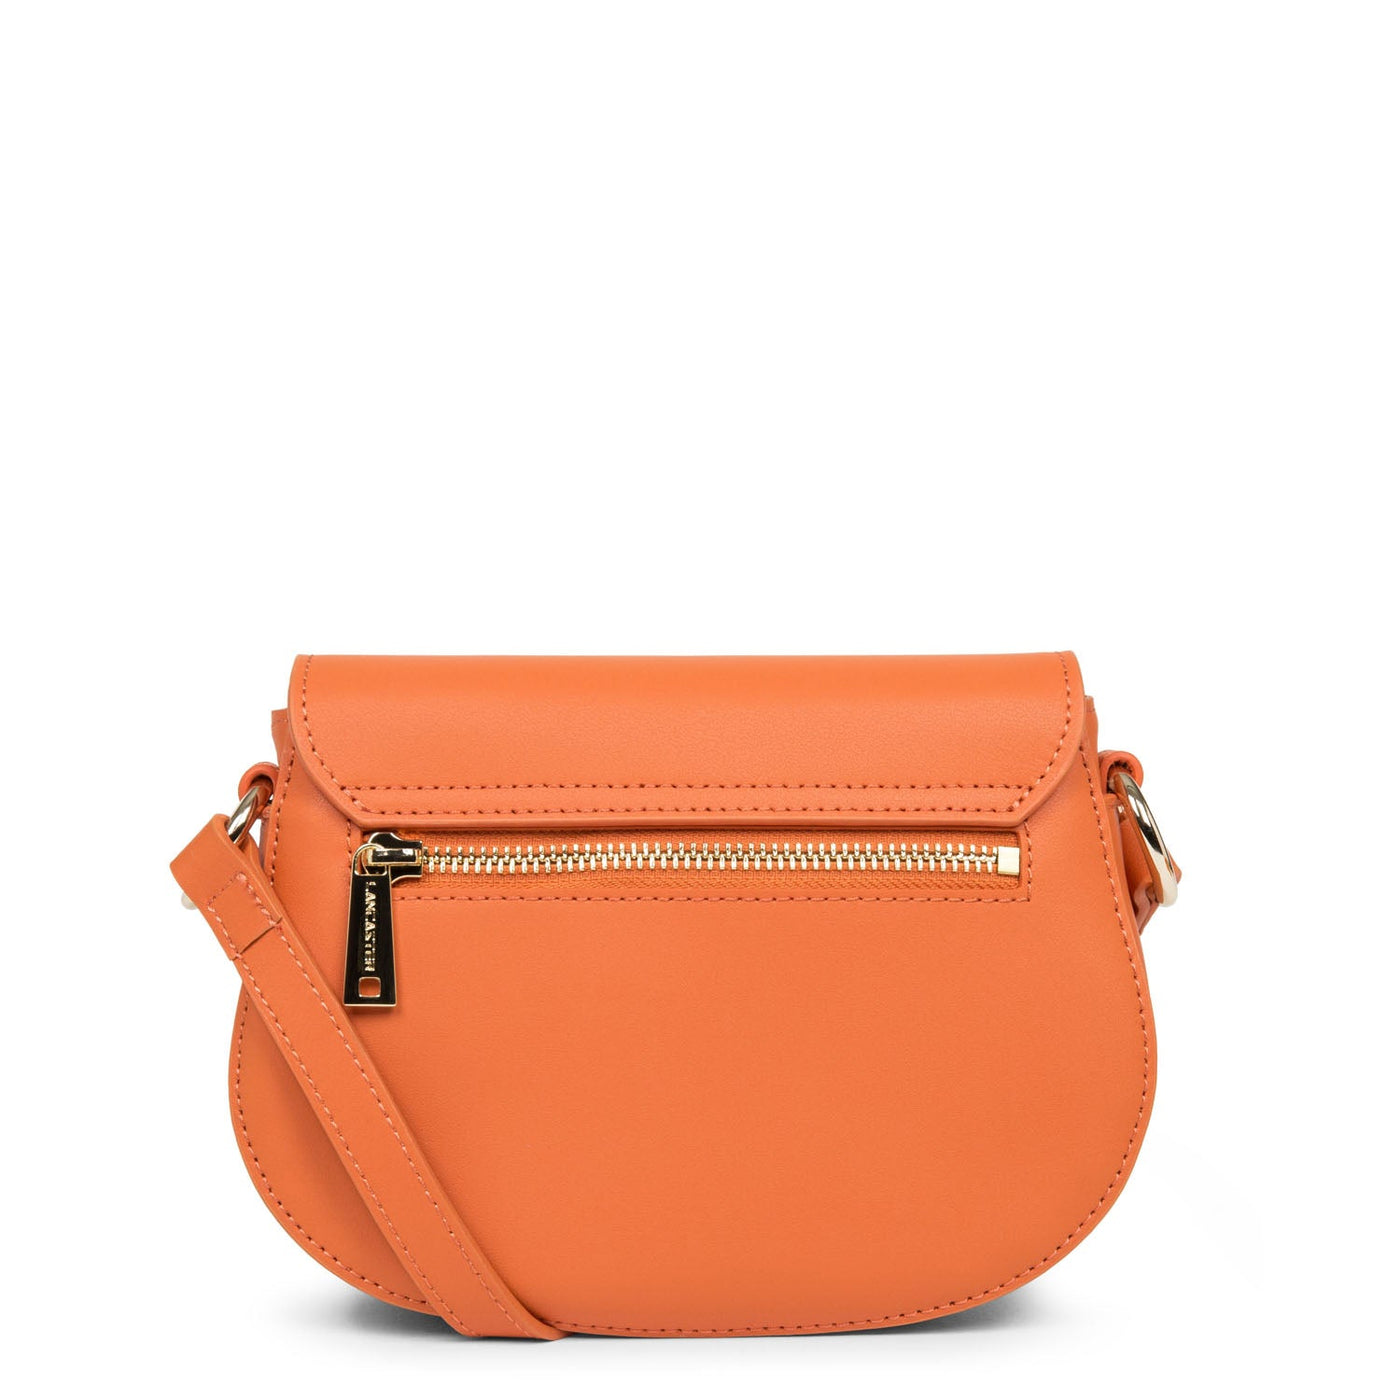 crossbody bag - city philos #couleur_orange